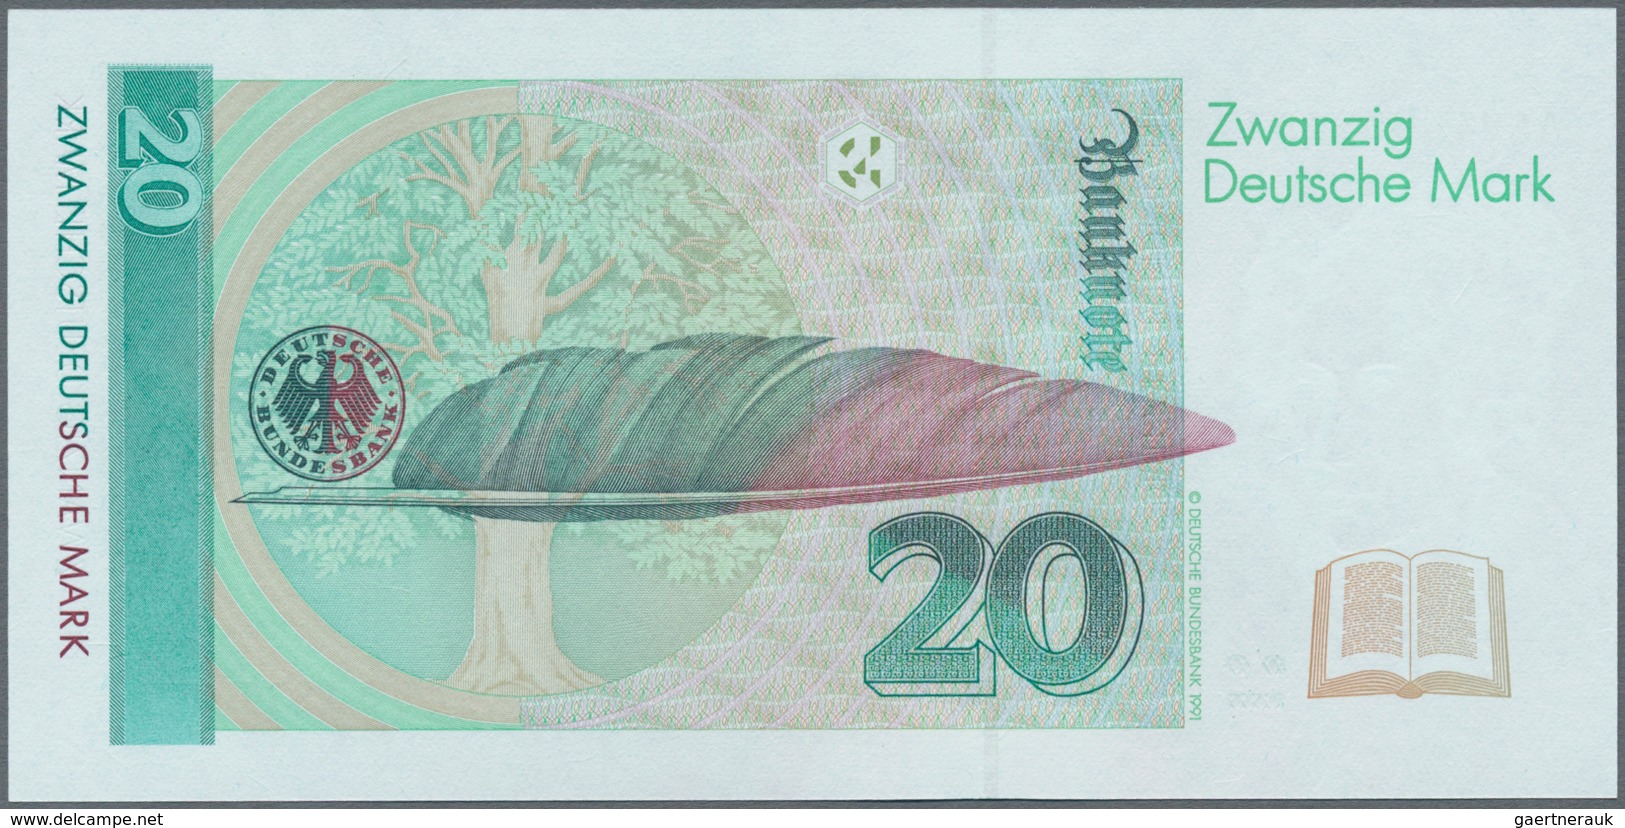 Deutschland - Bank Deutscher Länder + Bundesrepublik Deutschland: Lot mit 6 Banknoten 10 DM 1989, 2x